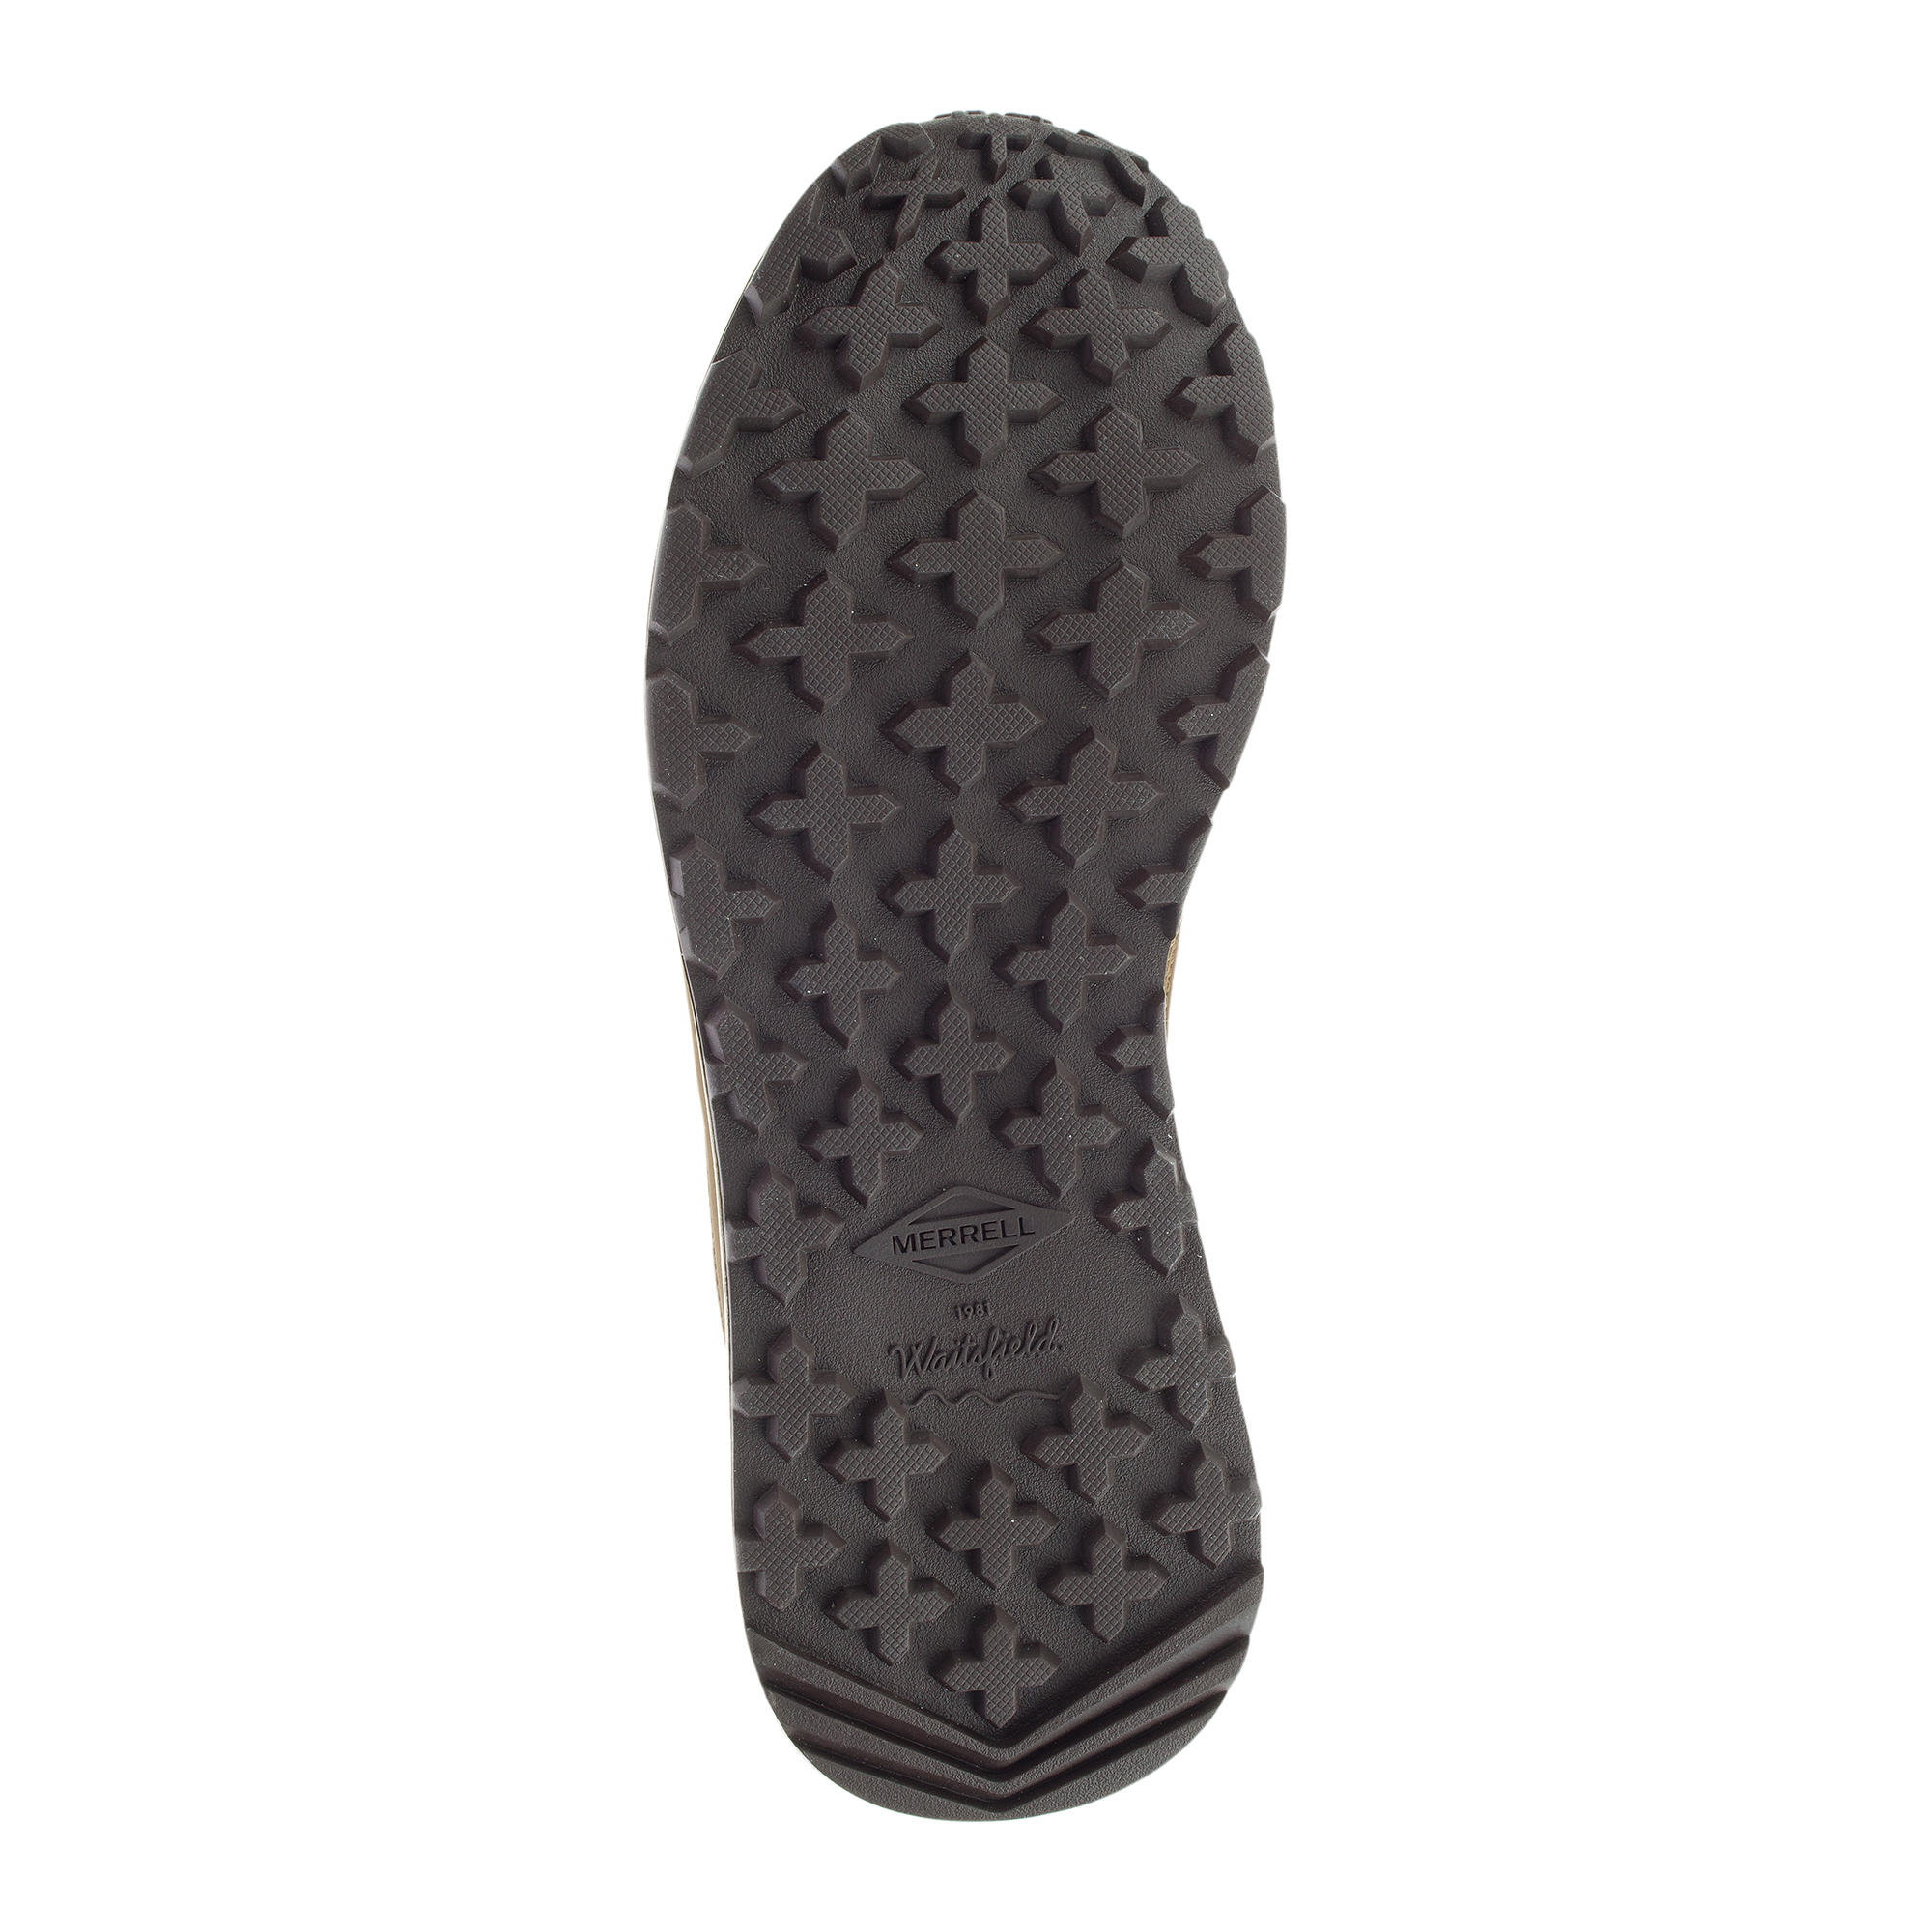 Men's waterproof walking boots - Merrell Billow - Sand 4/8